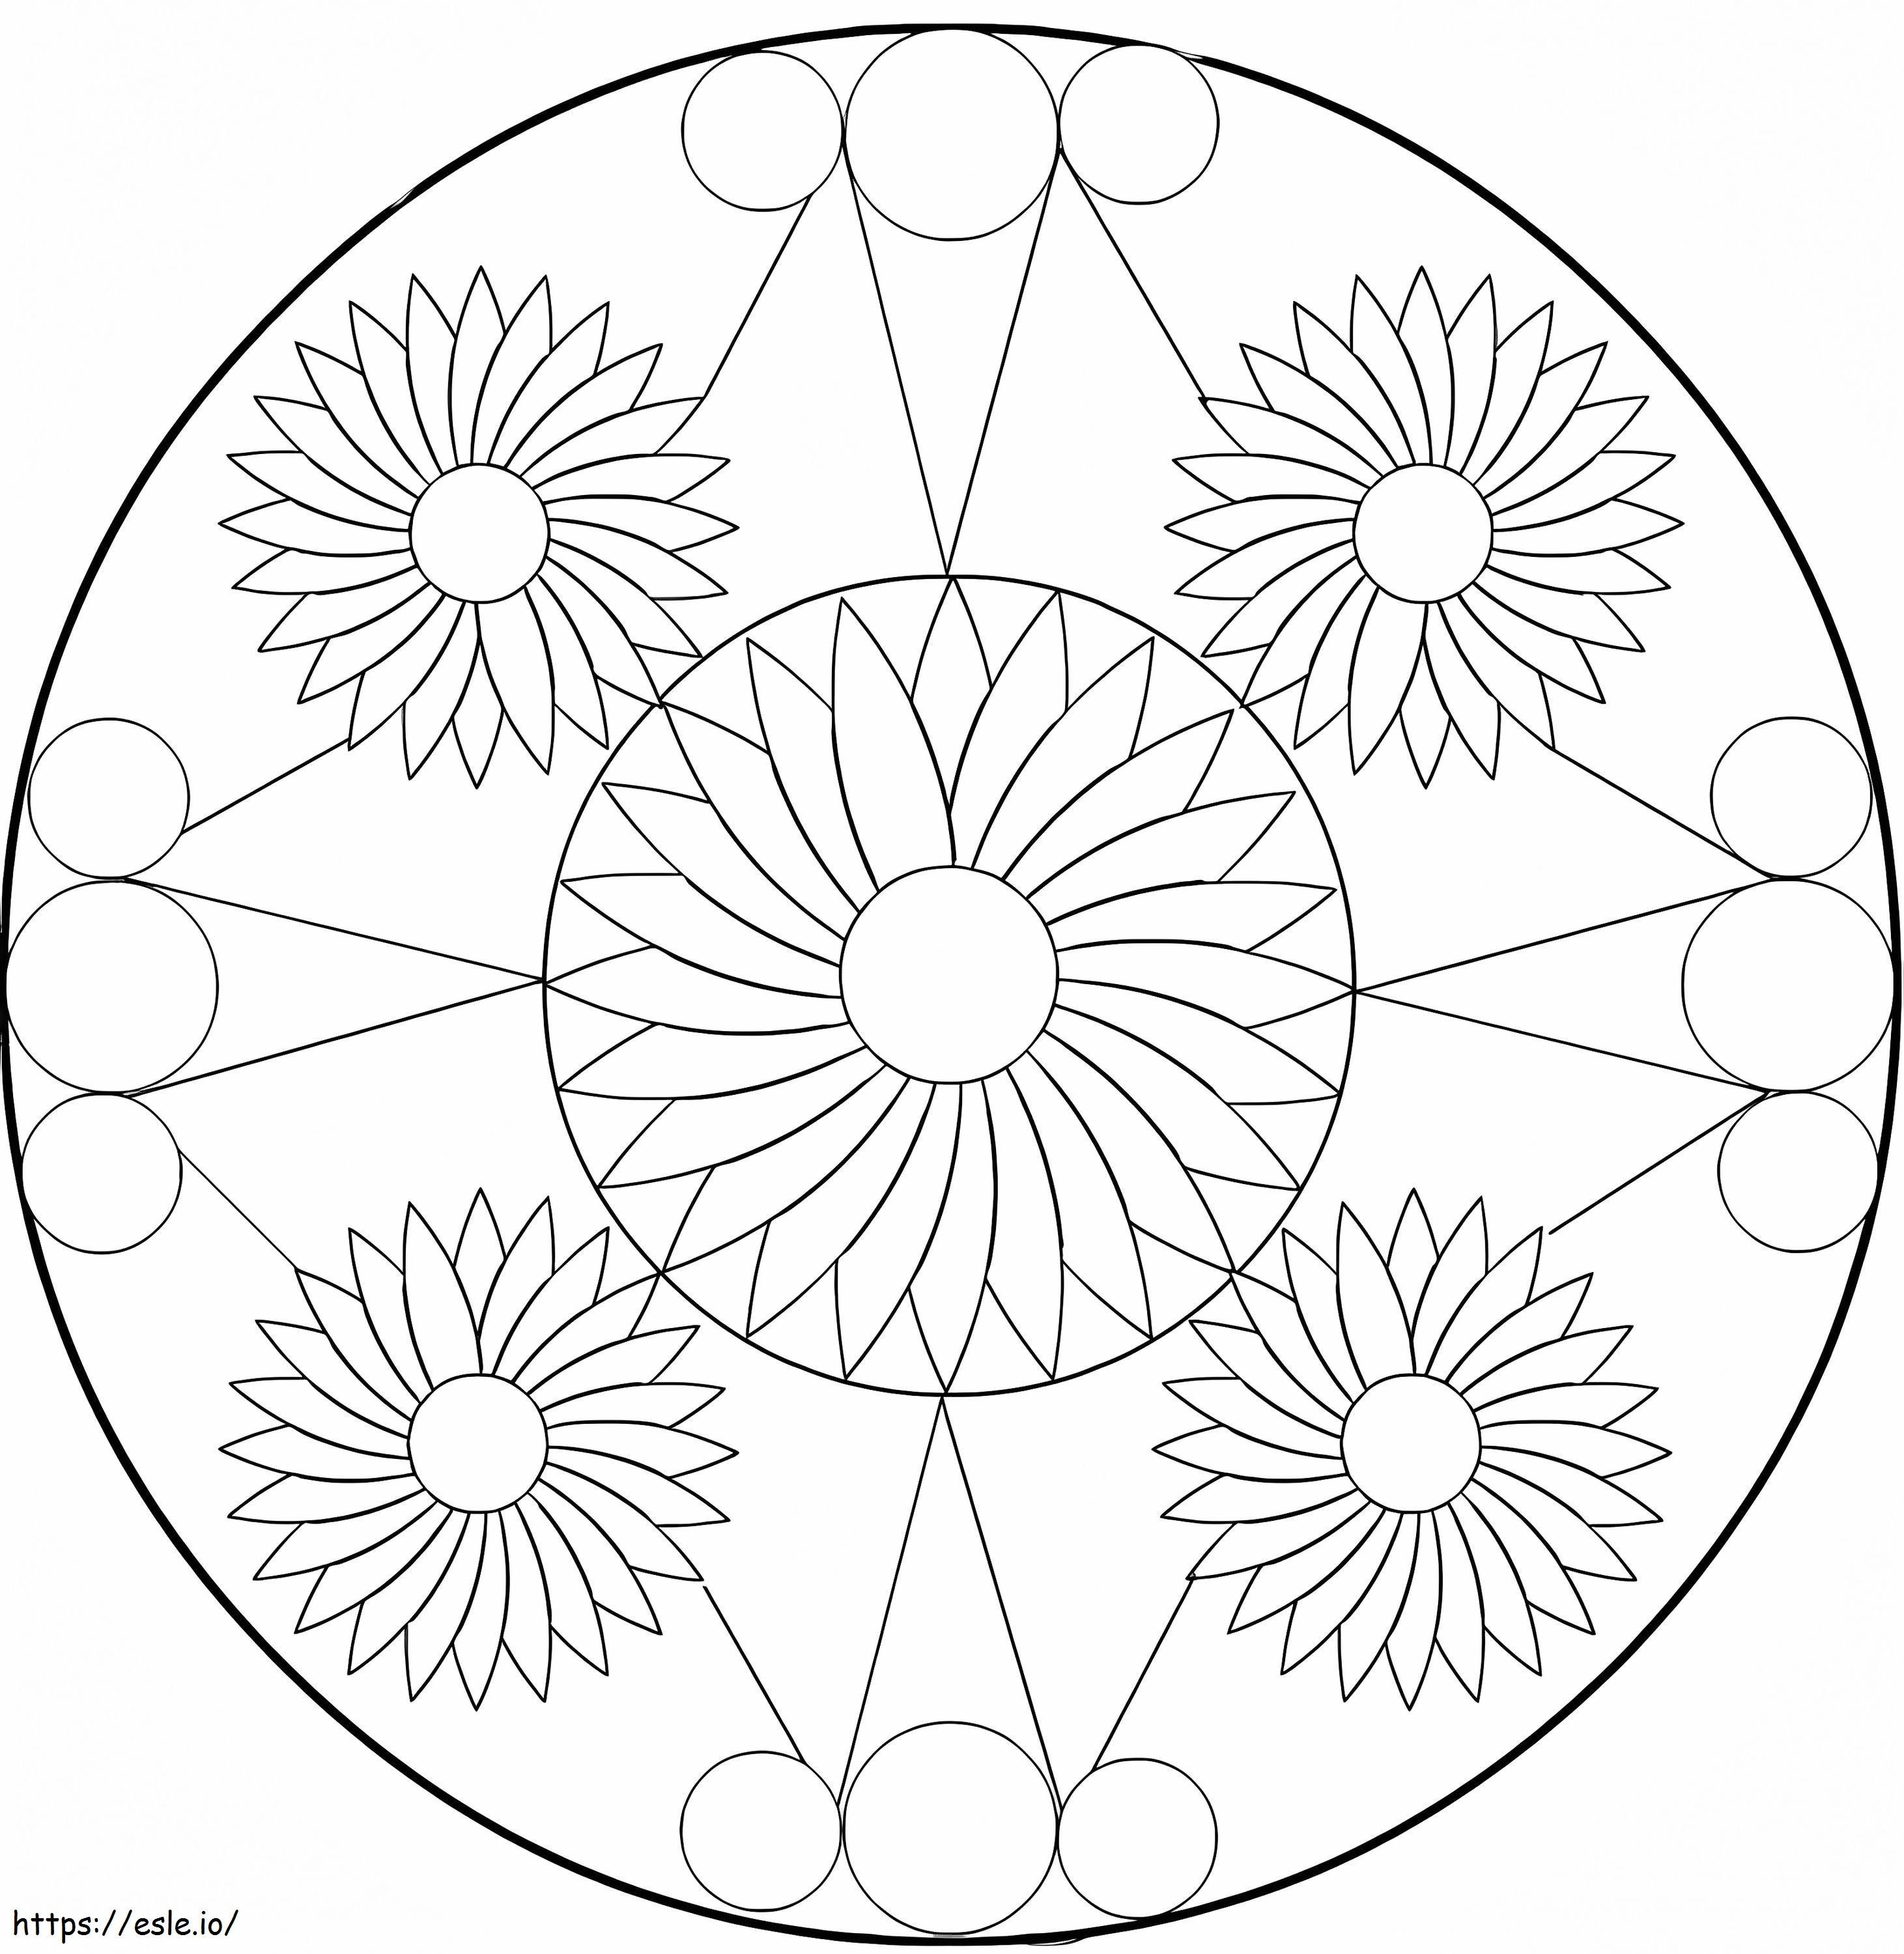 Havalı Çiçek Mandala boyama